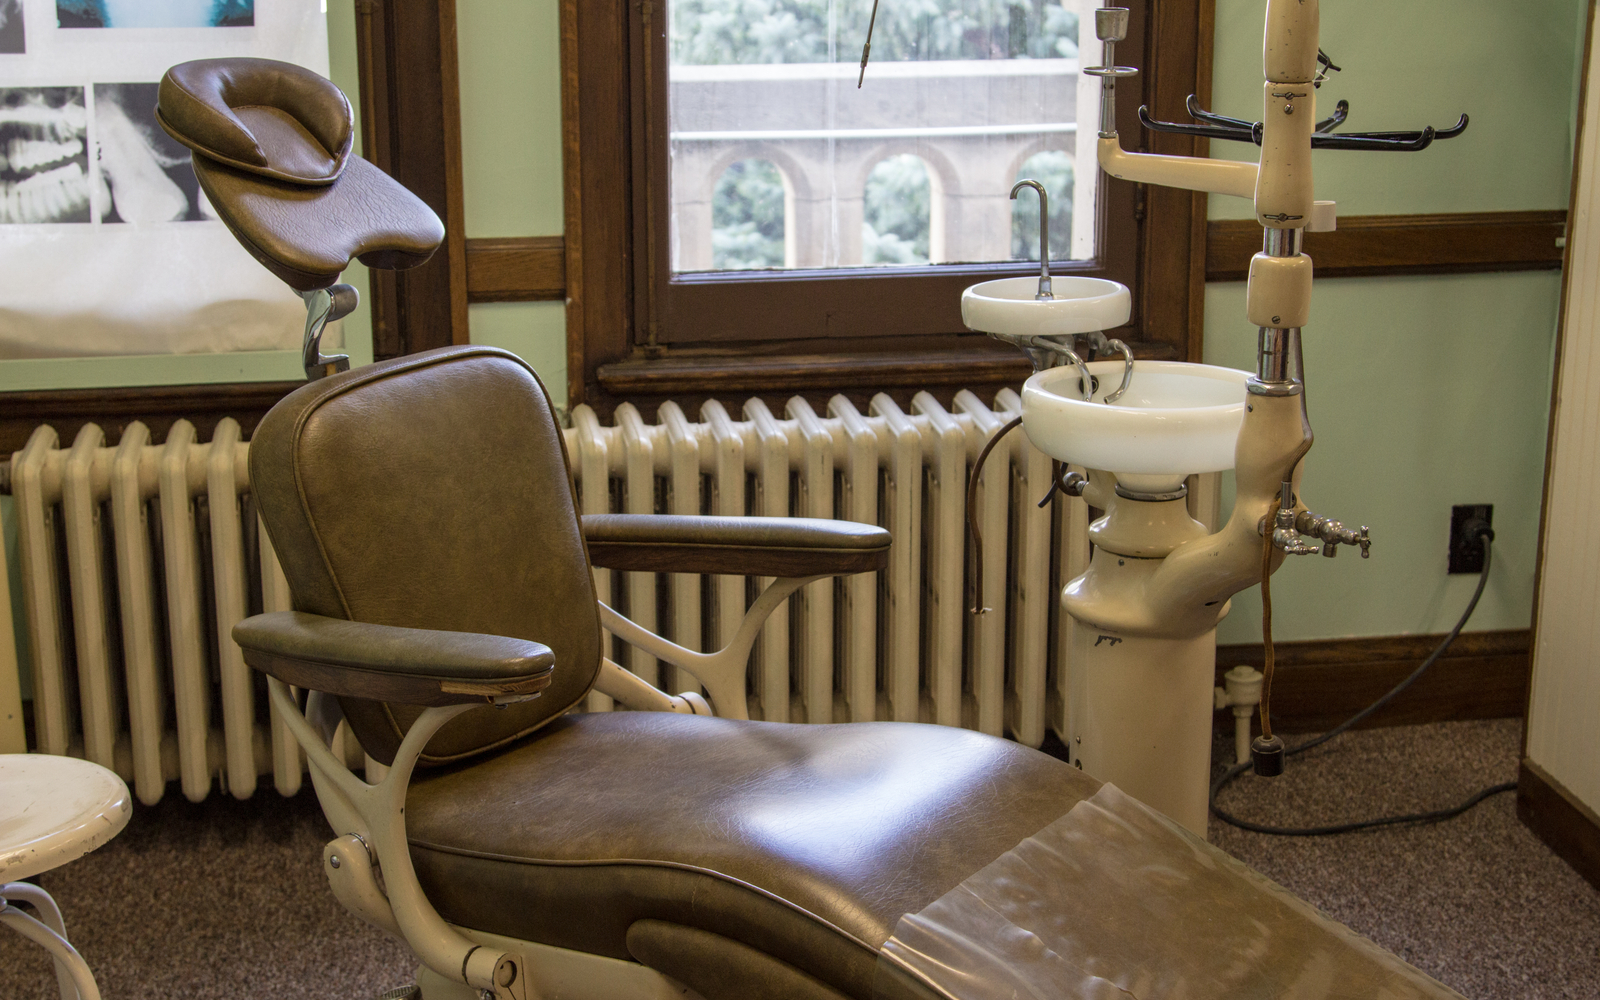 consultório dentista antigo